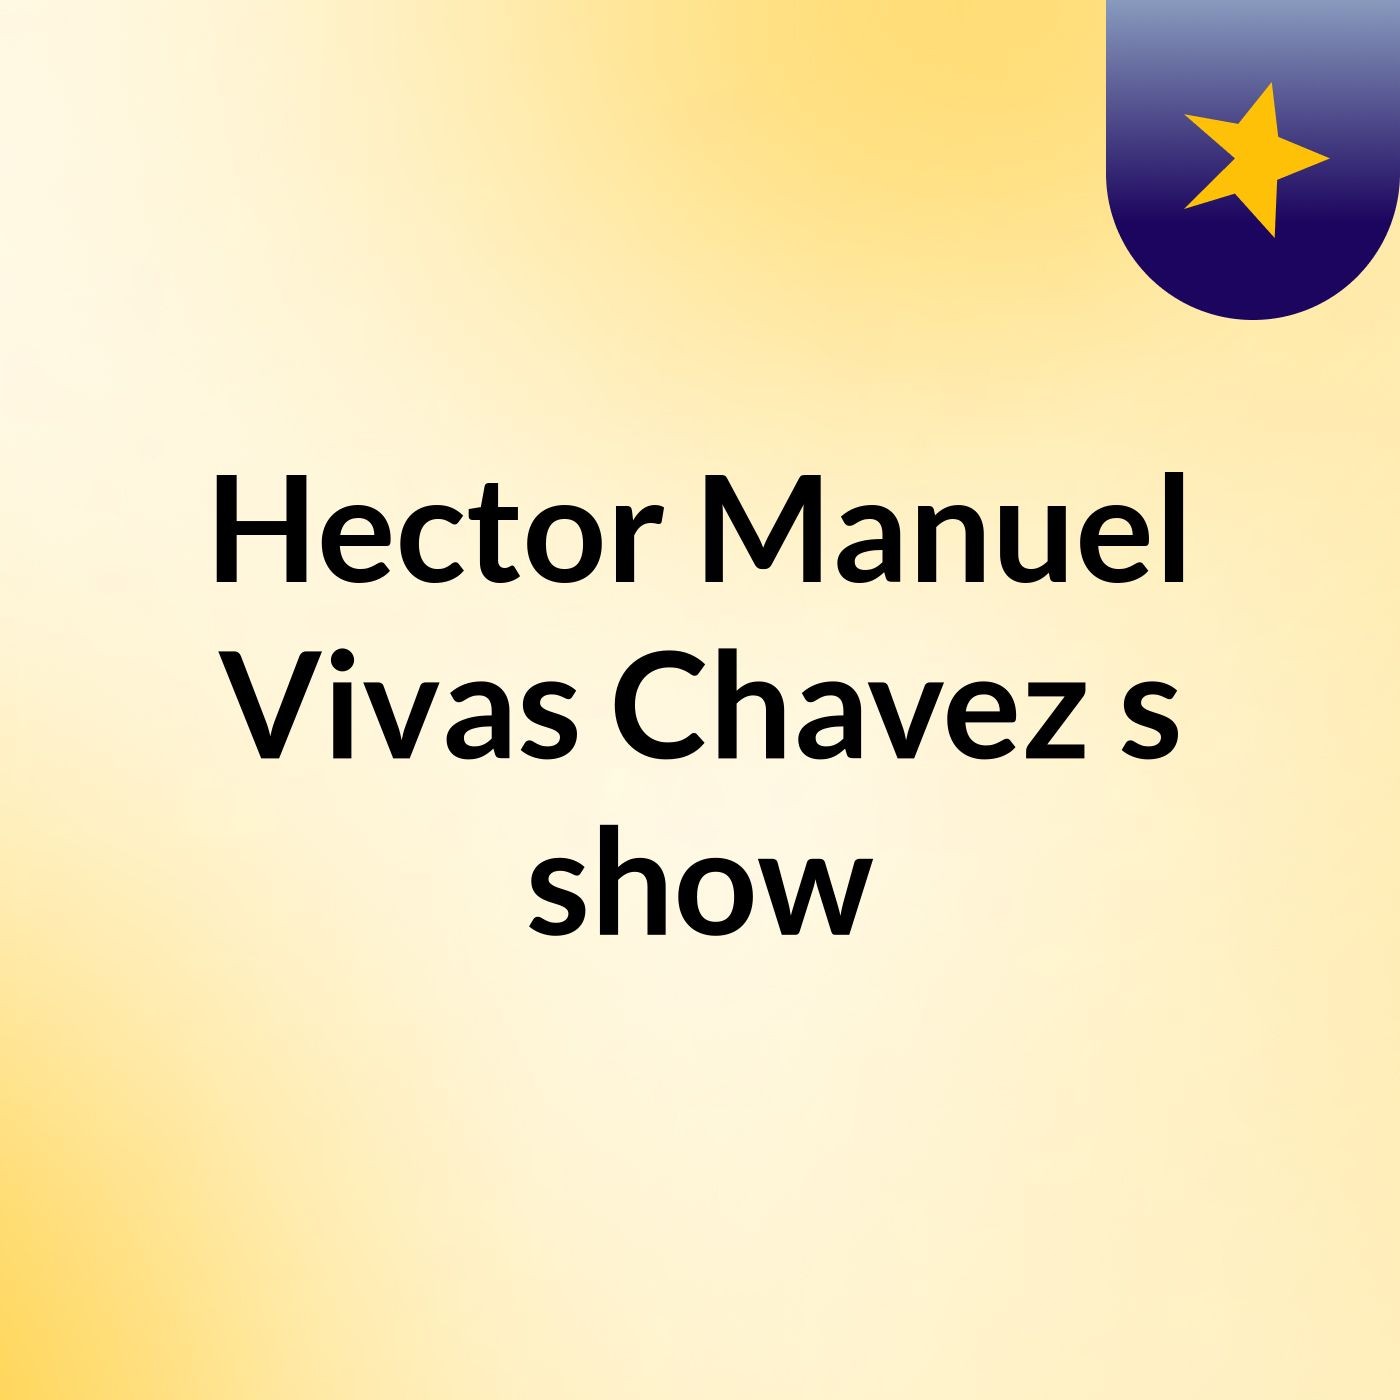 Hector Manuel Vivas Chavez's show